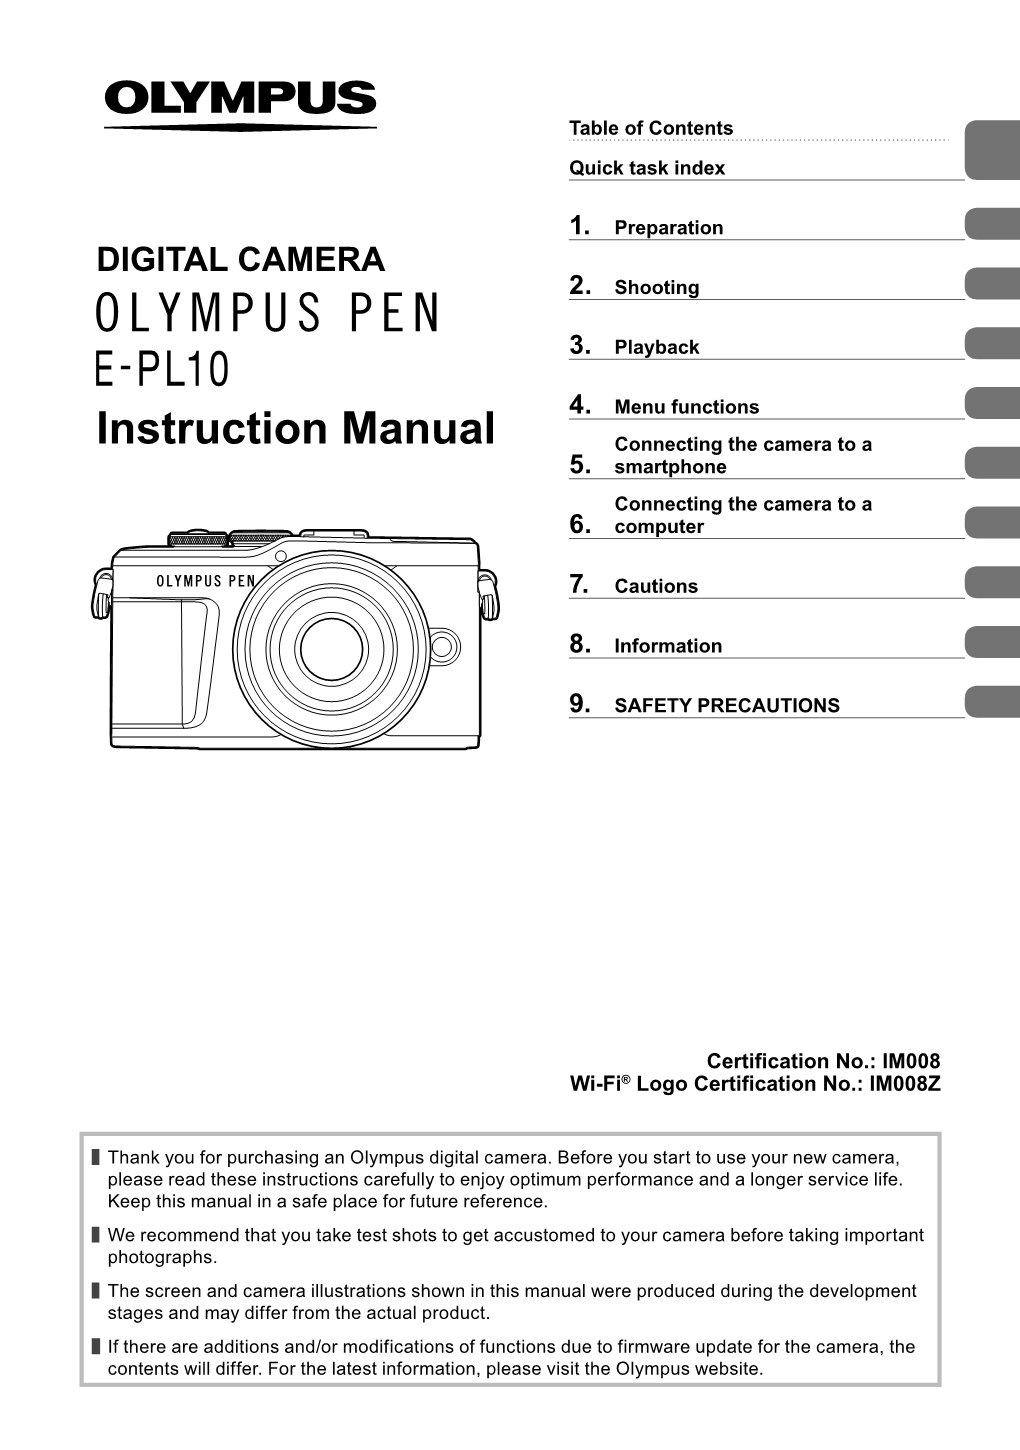 E-PL10 Instruction Manual